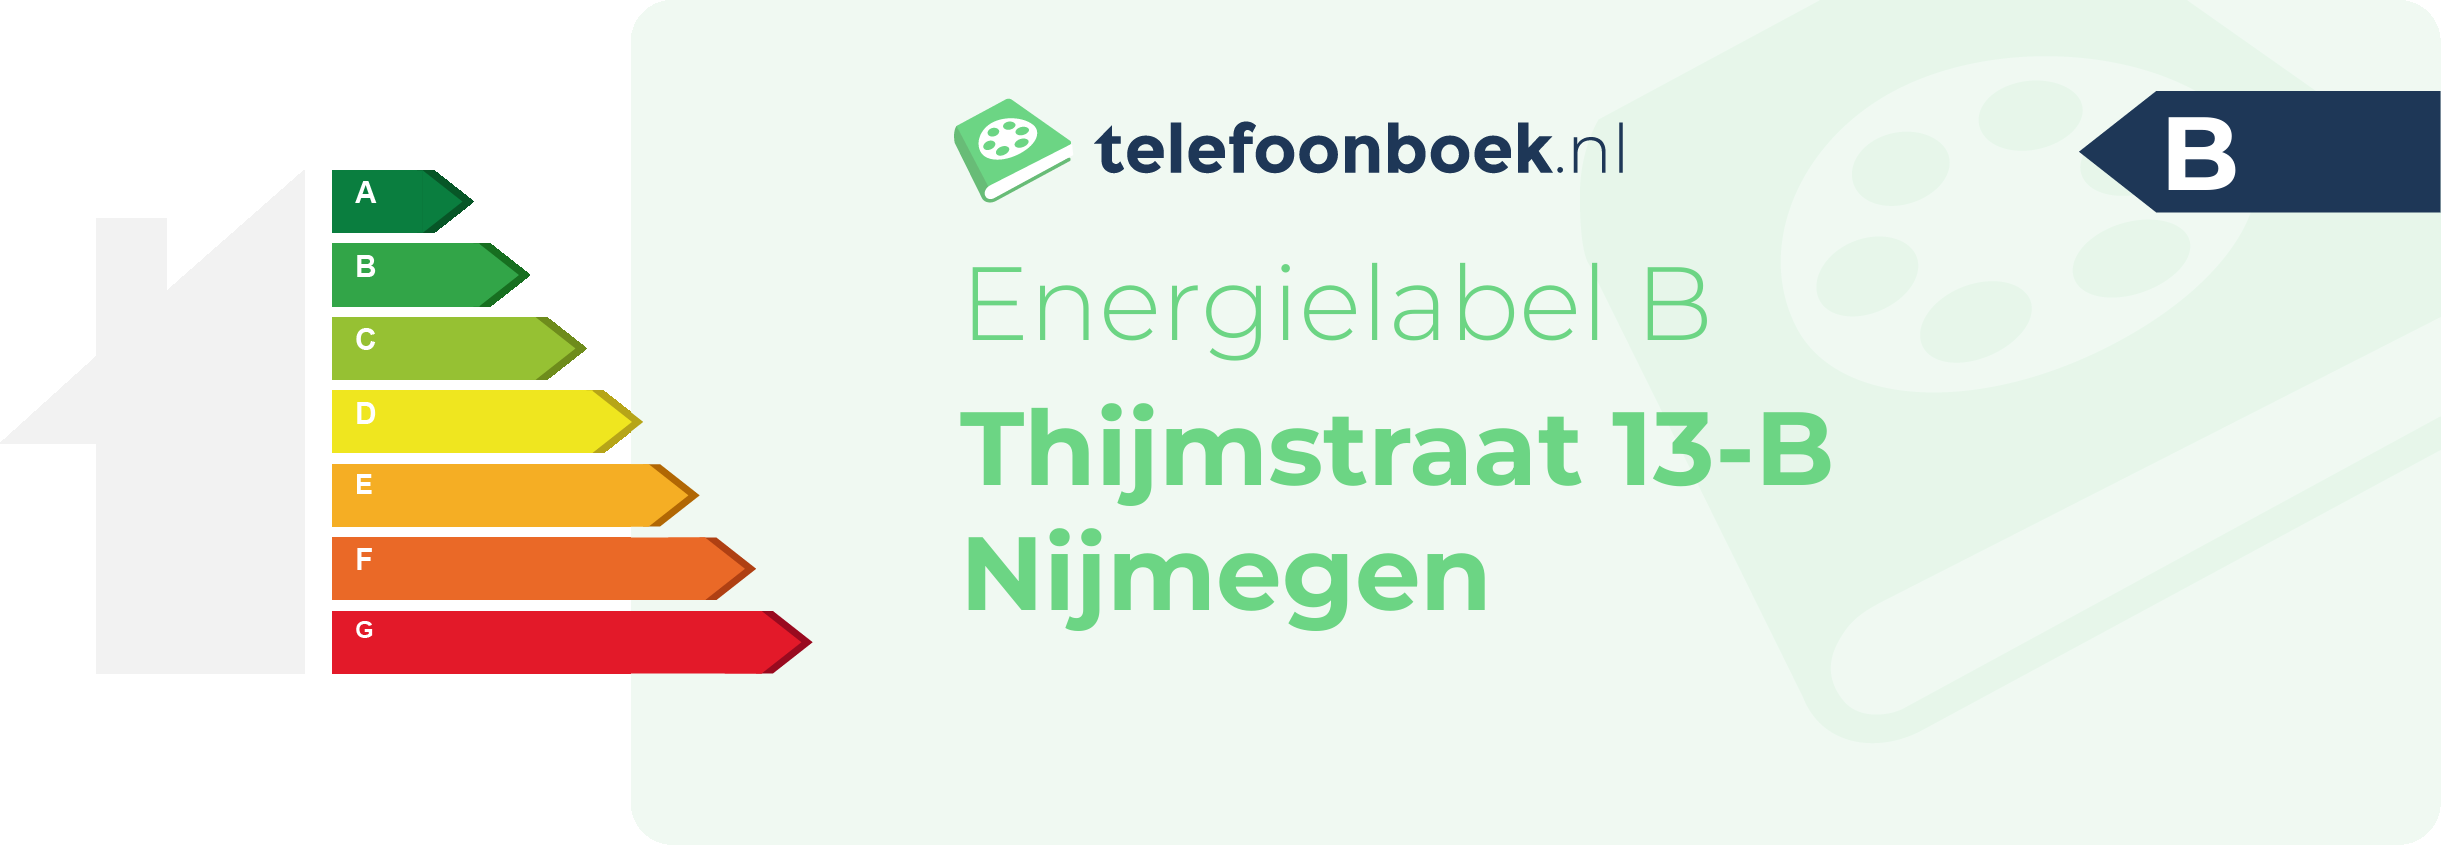 Energielabel Thijmstraat 13-B Nijmegen